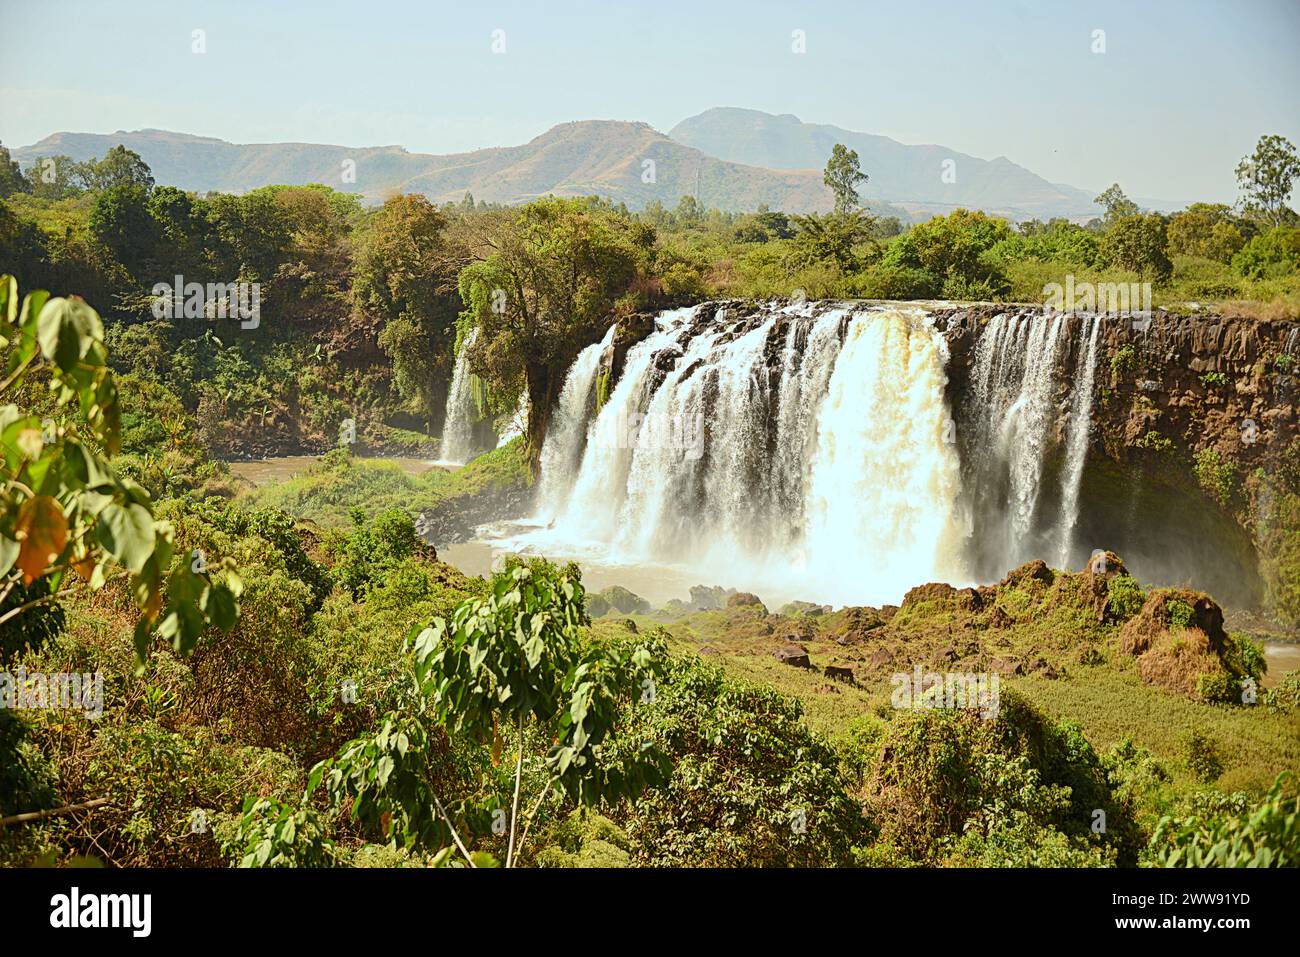 Le Blue Nile Falls sono cascate situate in Etiopia. Conosciuti come Tis Issat o Tissisat in amarico, si trovano nella prima parte del fiume, ab Foto Stock